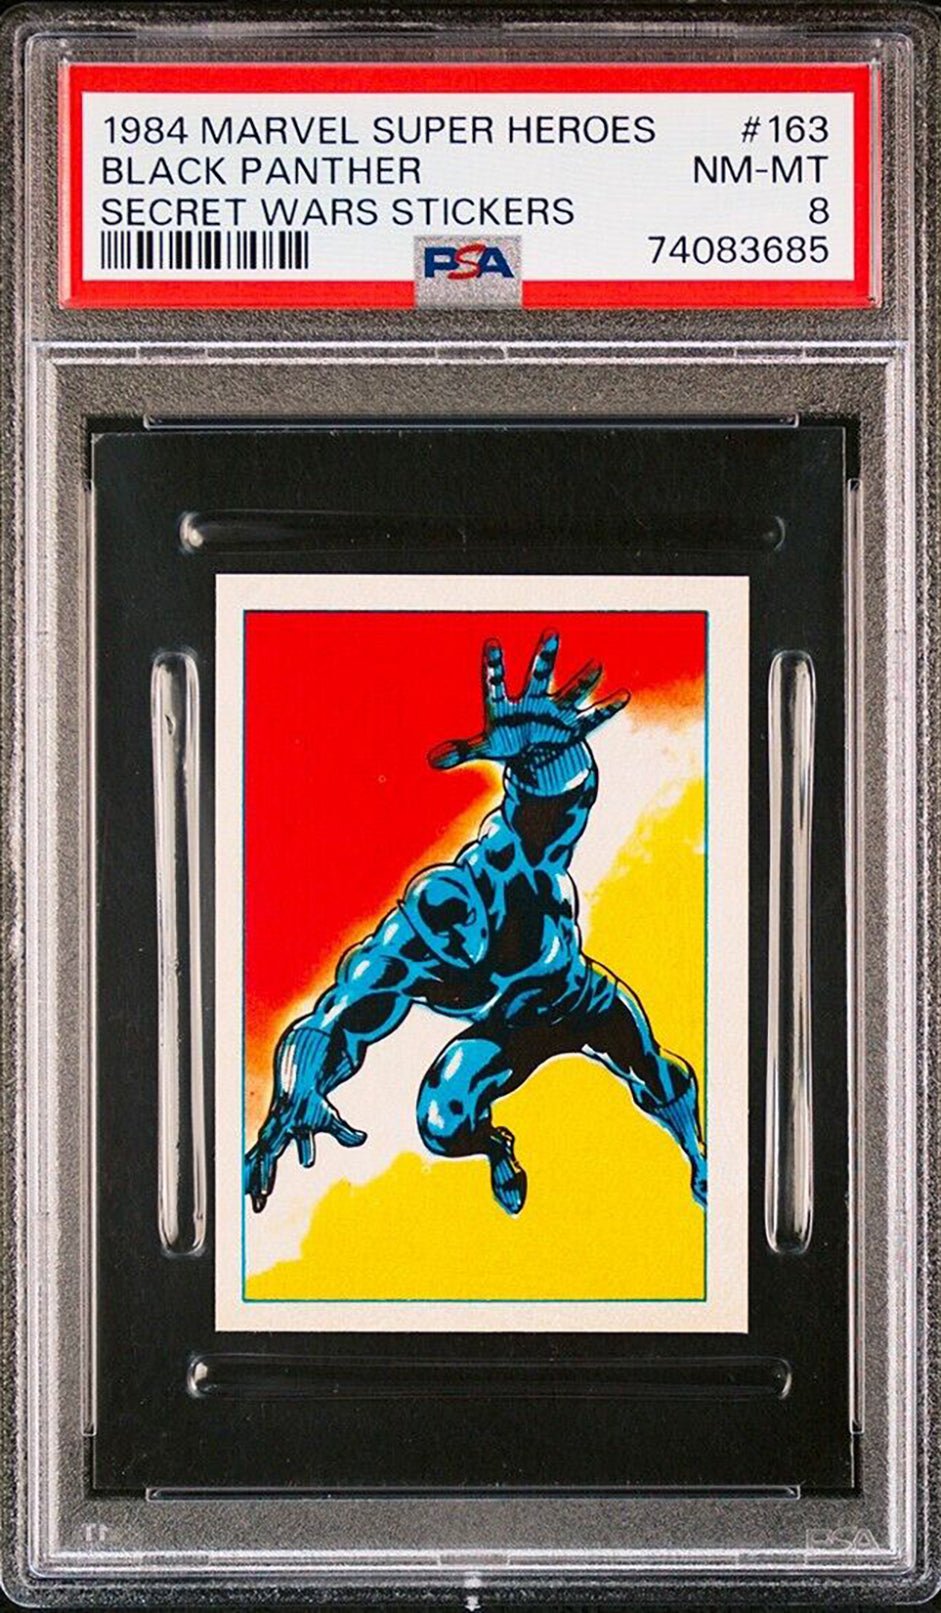 BLACK PANTHER PSA 8 1984 Marvel Super Heroes Secret Wars Sticker #163 C1 Marvel Graded Cards Sticker - Hobby Gems